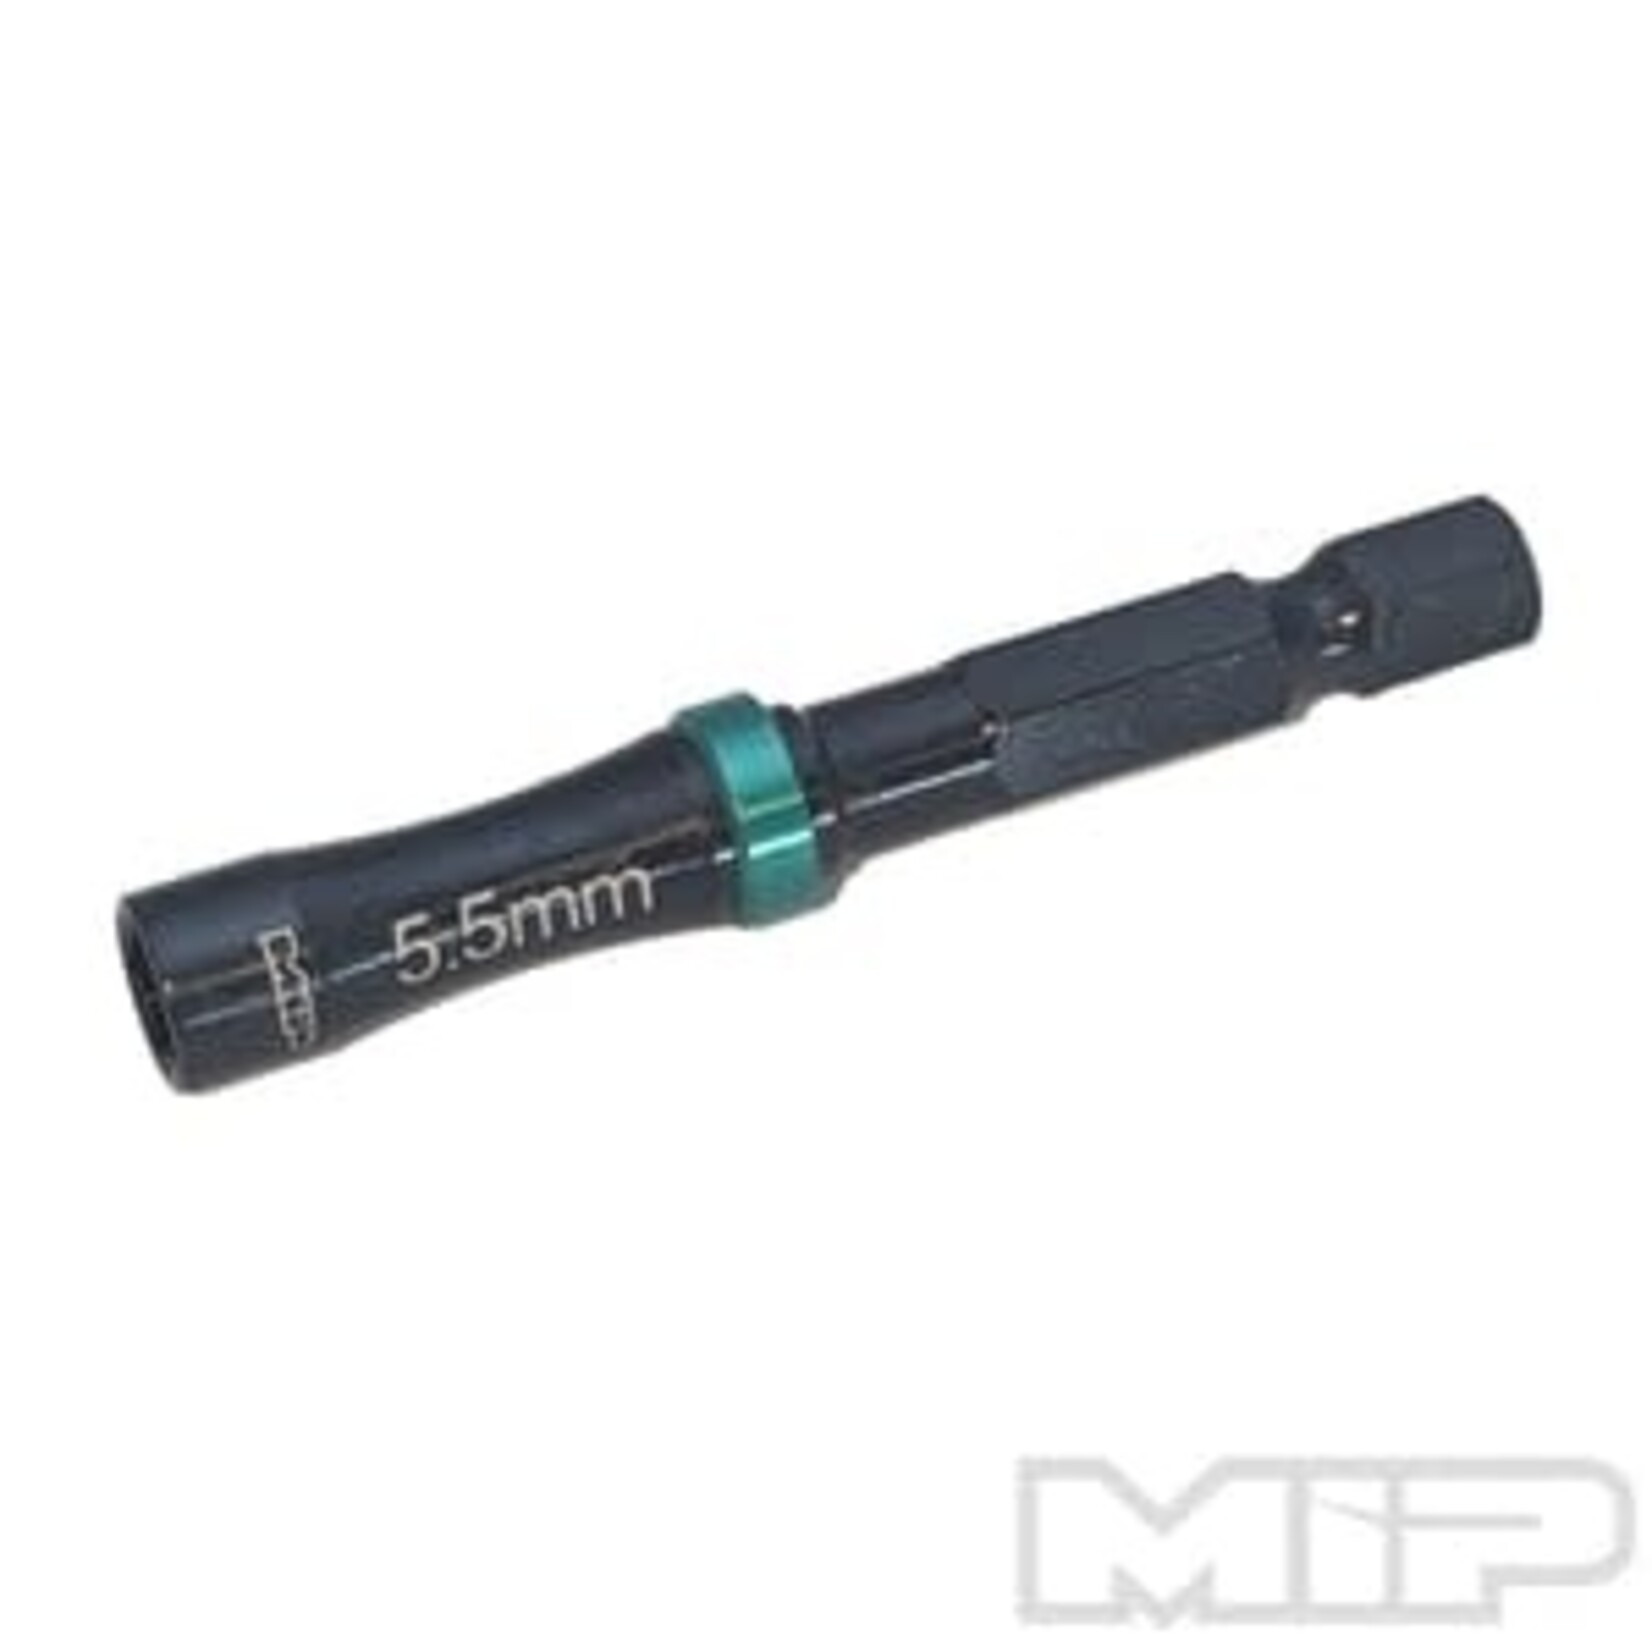 MIP MIP9803S MIP Nut Driver Speed Tip Wrench, 5.5mm